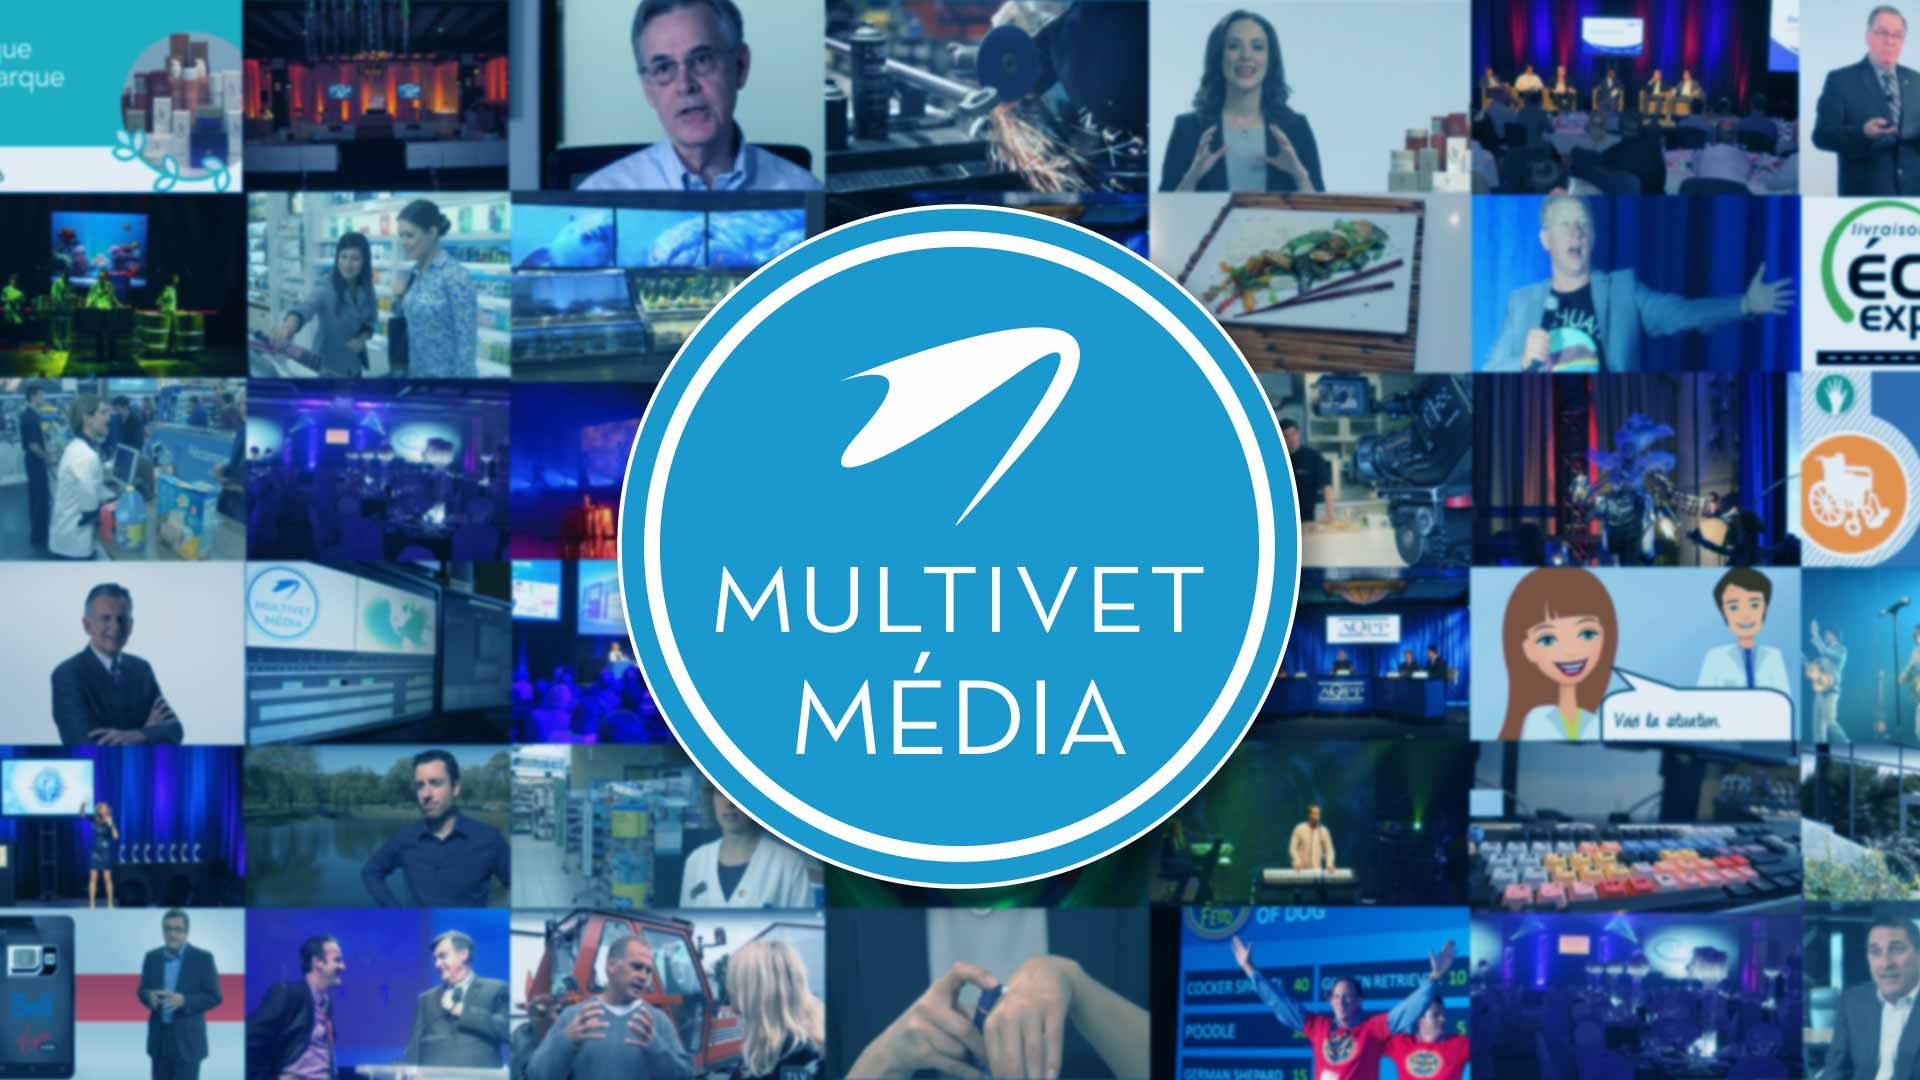 Accueil Multivet Média mosaique